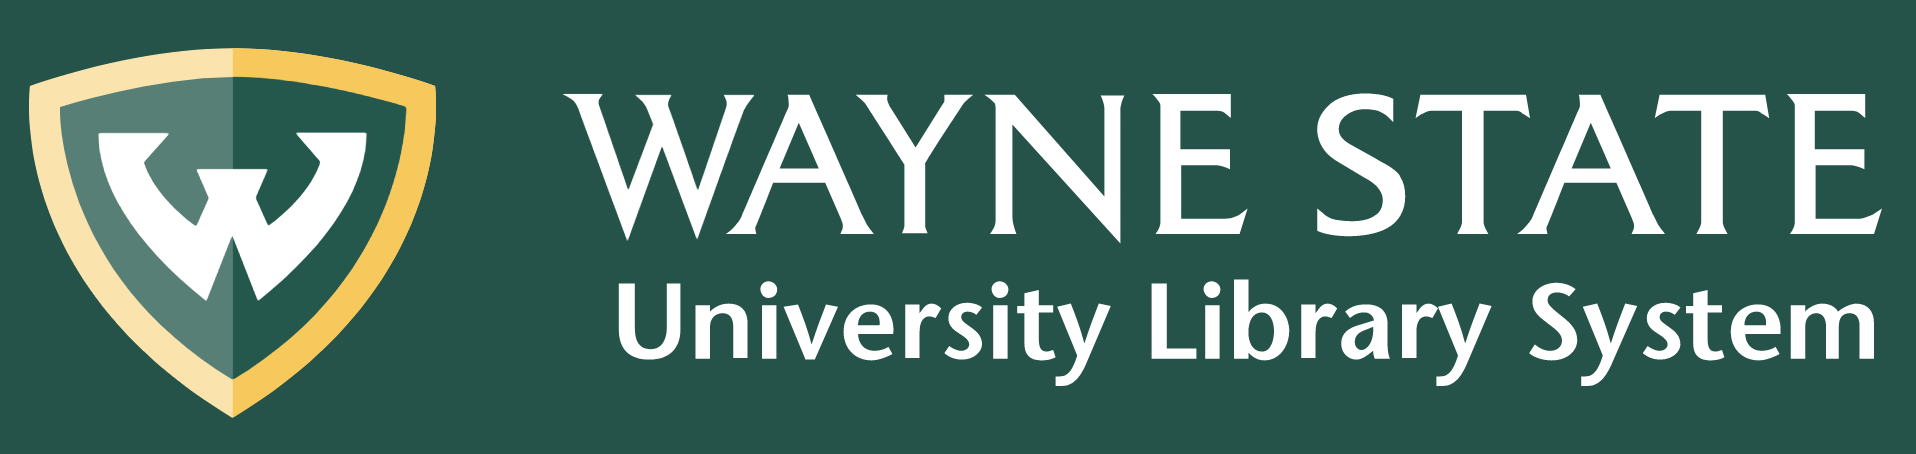 Wayne State University Library System